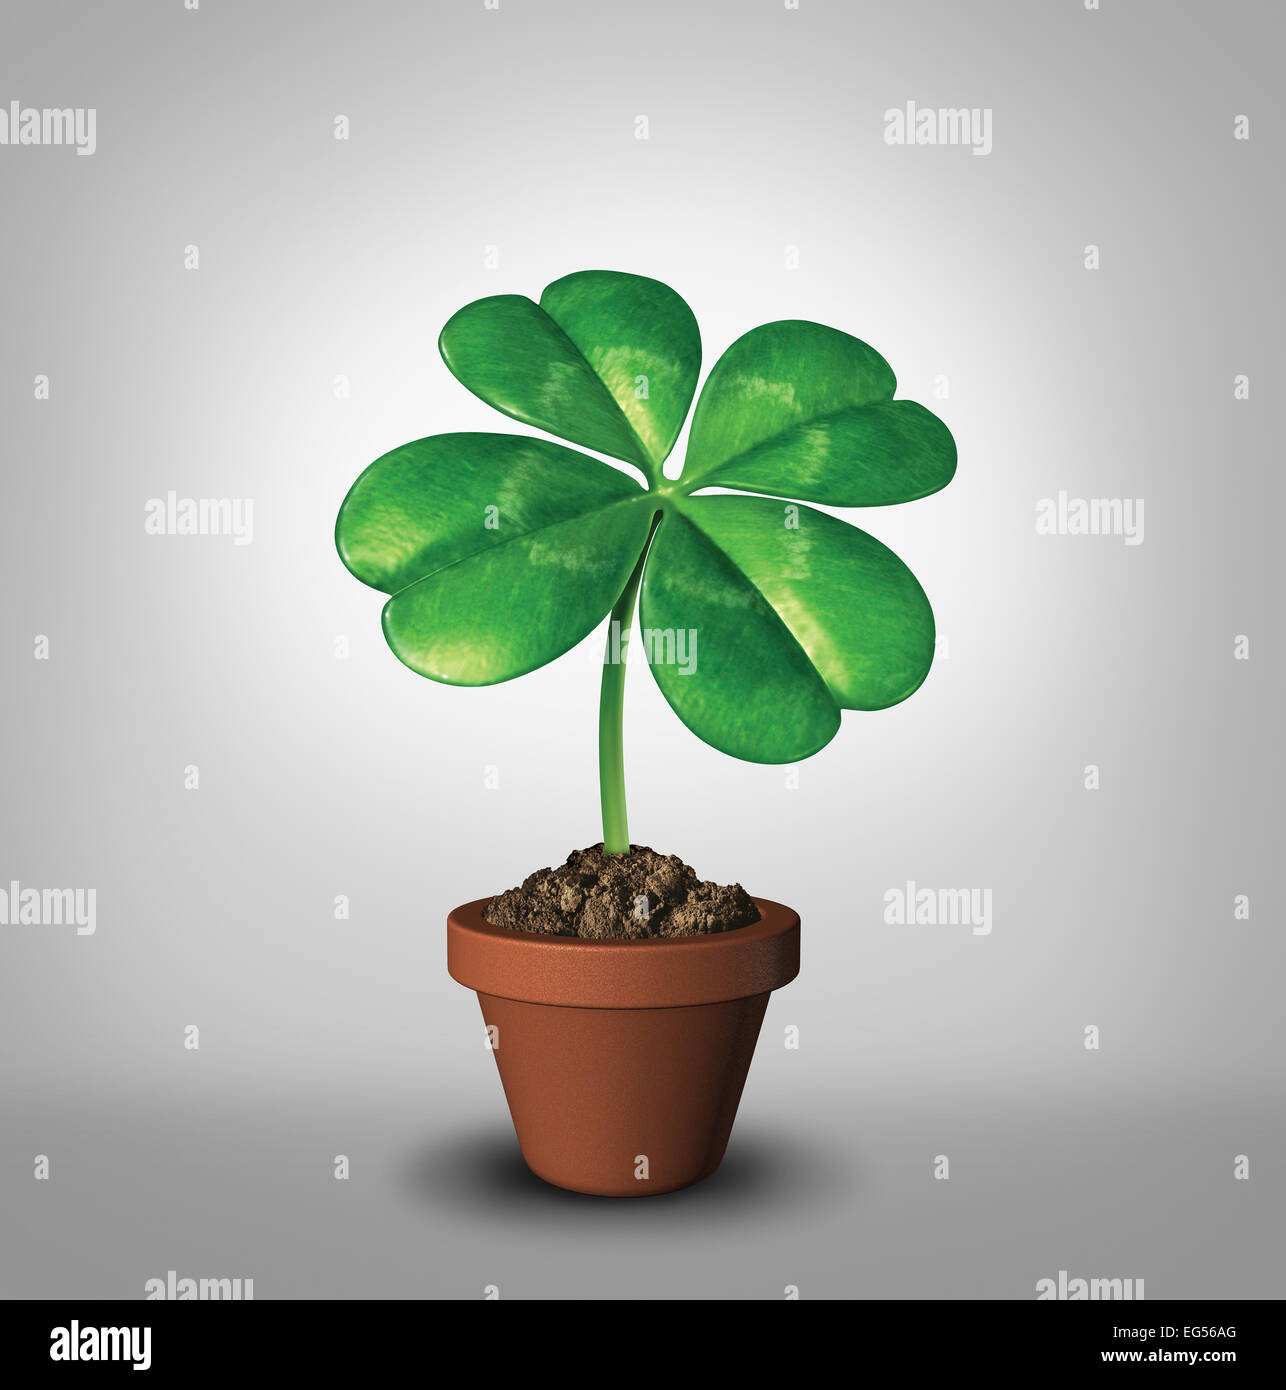 Fai crescere la tua fortuna come quattro leaf clover pianta in un vaso di fiori come un simbolo per il successo e la prosperità come un verde fascino fortunato icona della buona sorte e la fortuna di opportunità e di crescita sana. Foto Stock